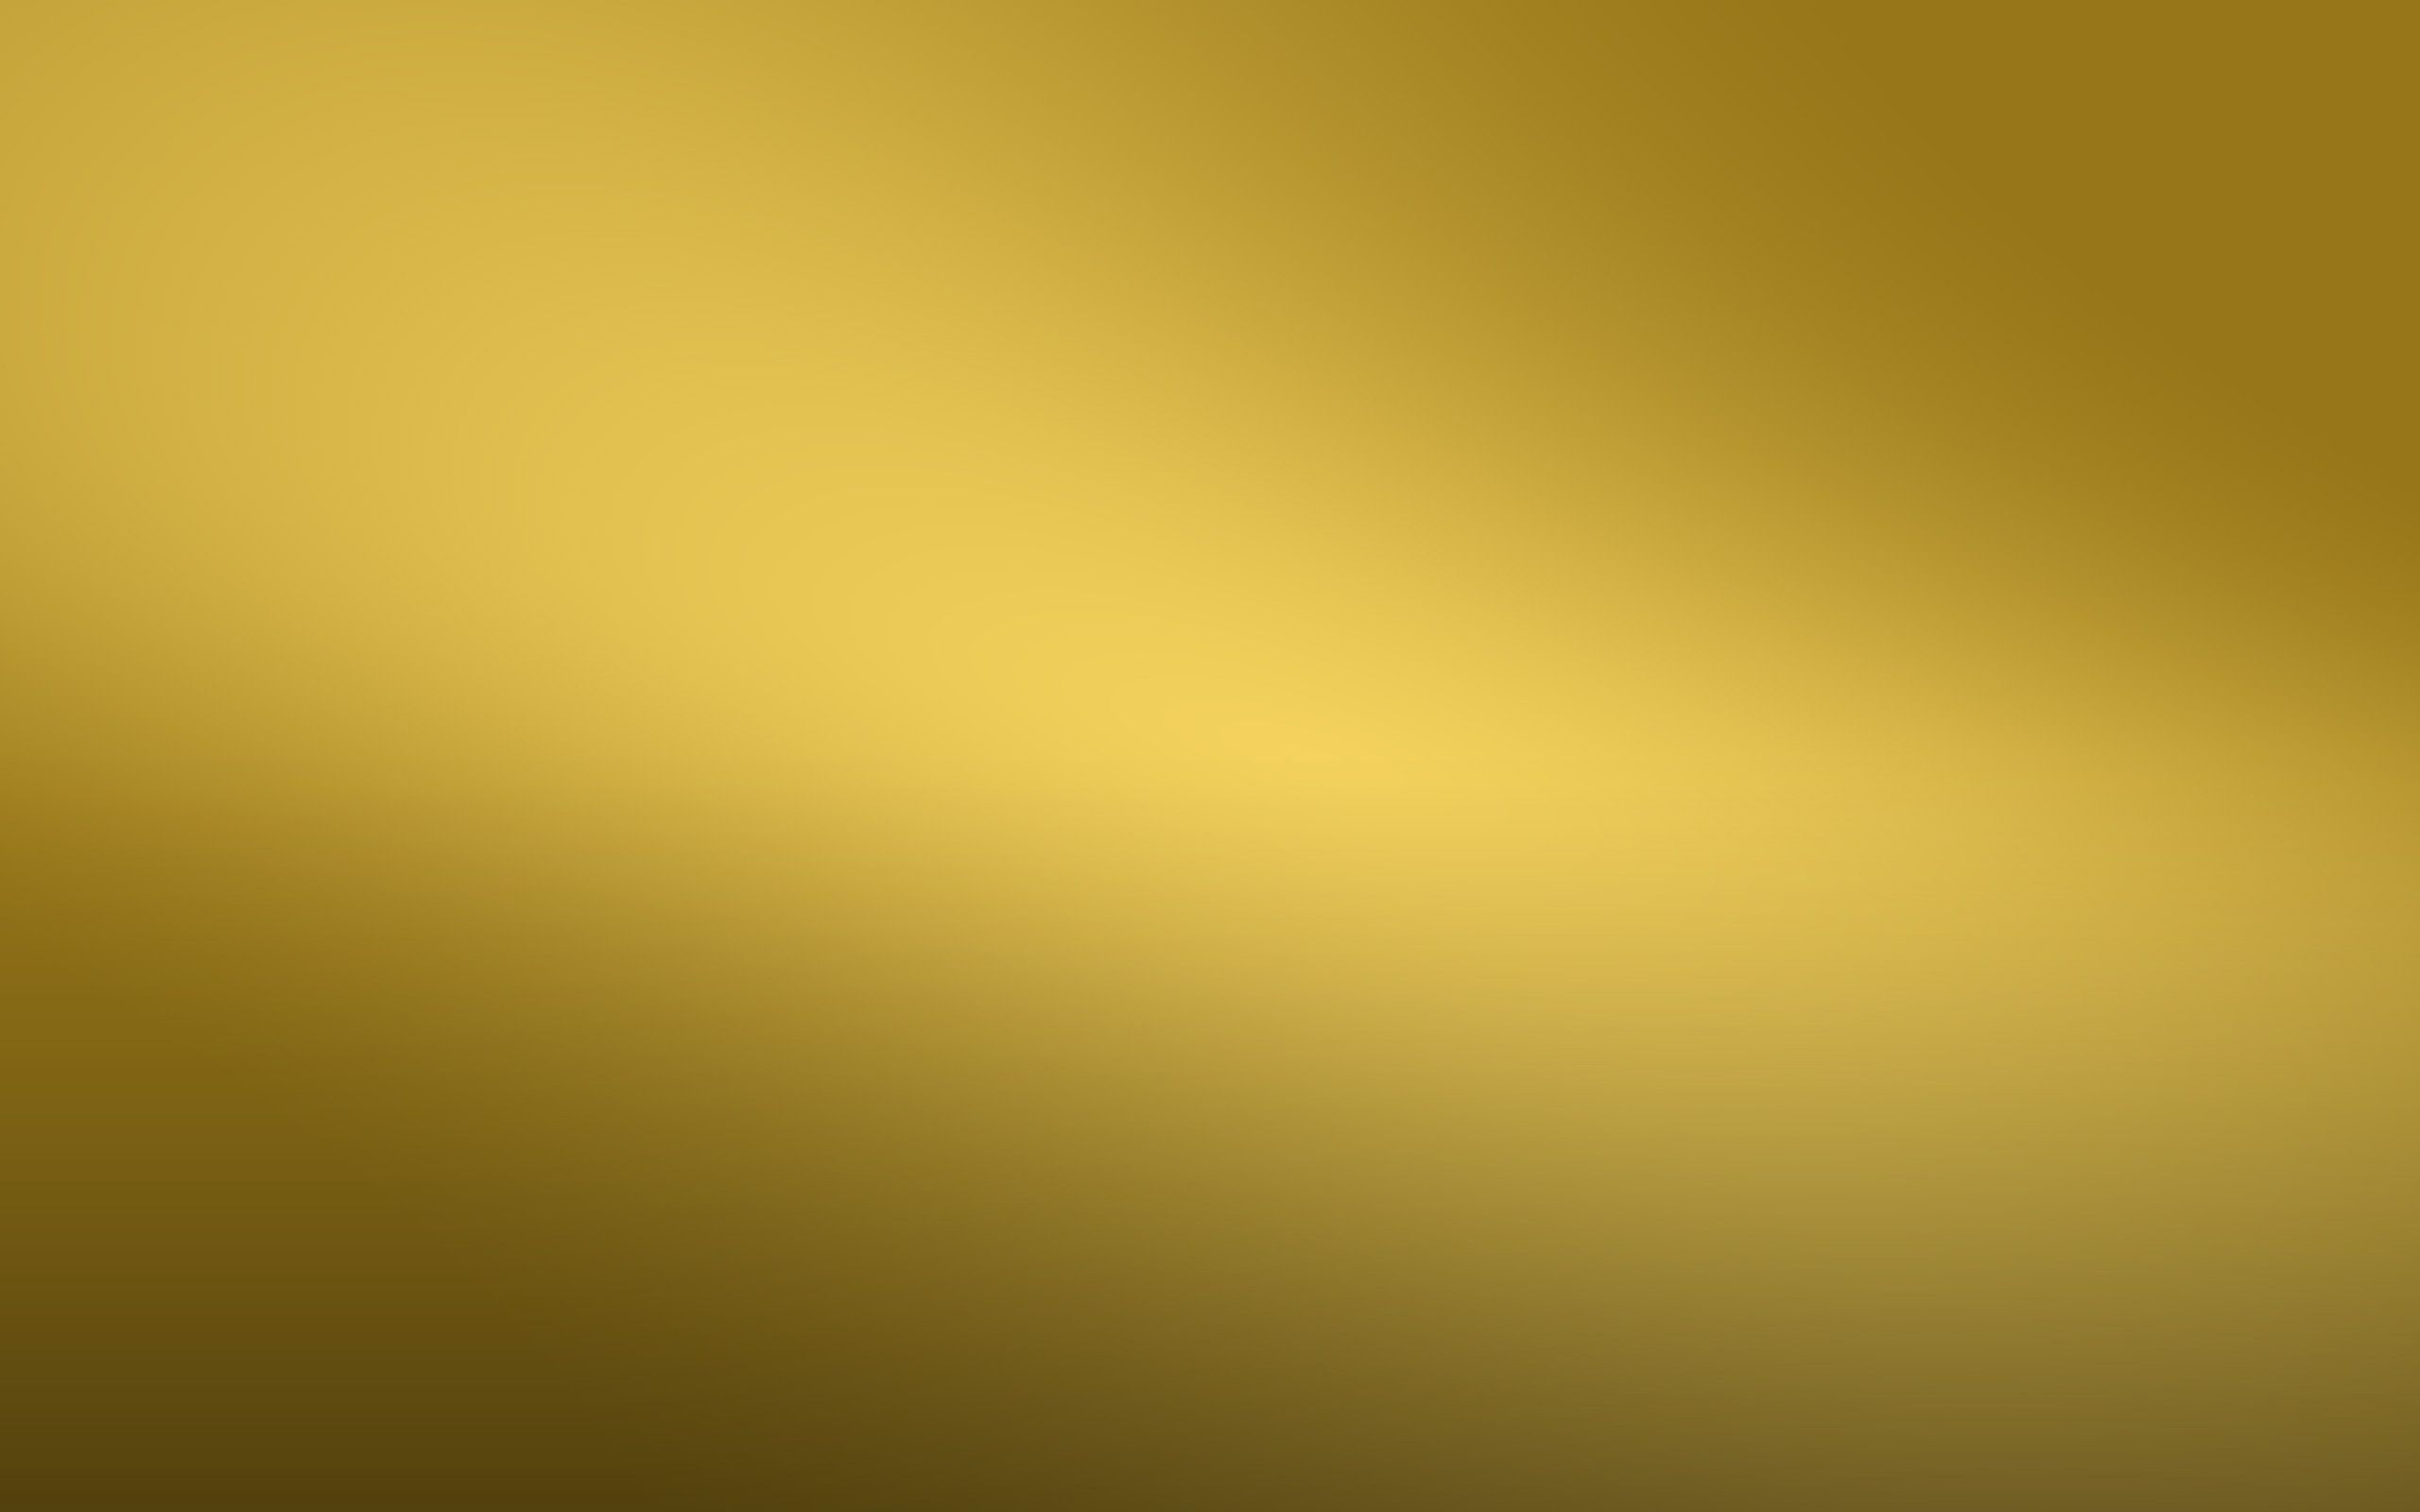 Hình nền Vàng 24K trên WallpaperDog: Bạn đang tìm kiếm một hình nền độc đáo và đầy đặn? Hãy thử ngay với hình nền Vàng 24K trên WallpaperDog. Với kiểu dáng đẹp mắt và chất liệu vàng thật, bạn sẽ không thể cưỡng lại được sự hấp dẫn và sang trọng của nó. Hãy tải về và cảm nhận thế giới đẳng cấp từ hình nền Vàng 24K ngay!